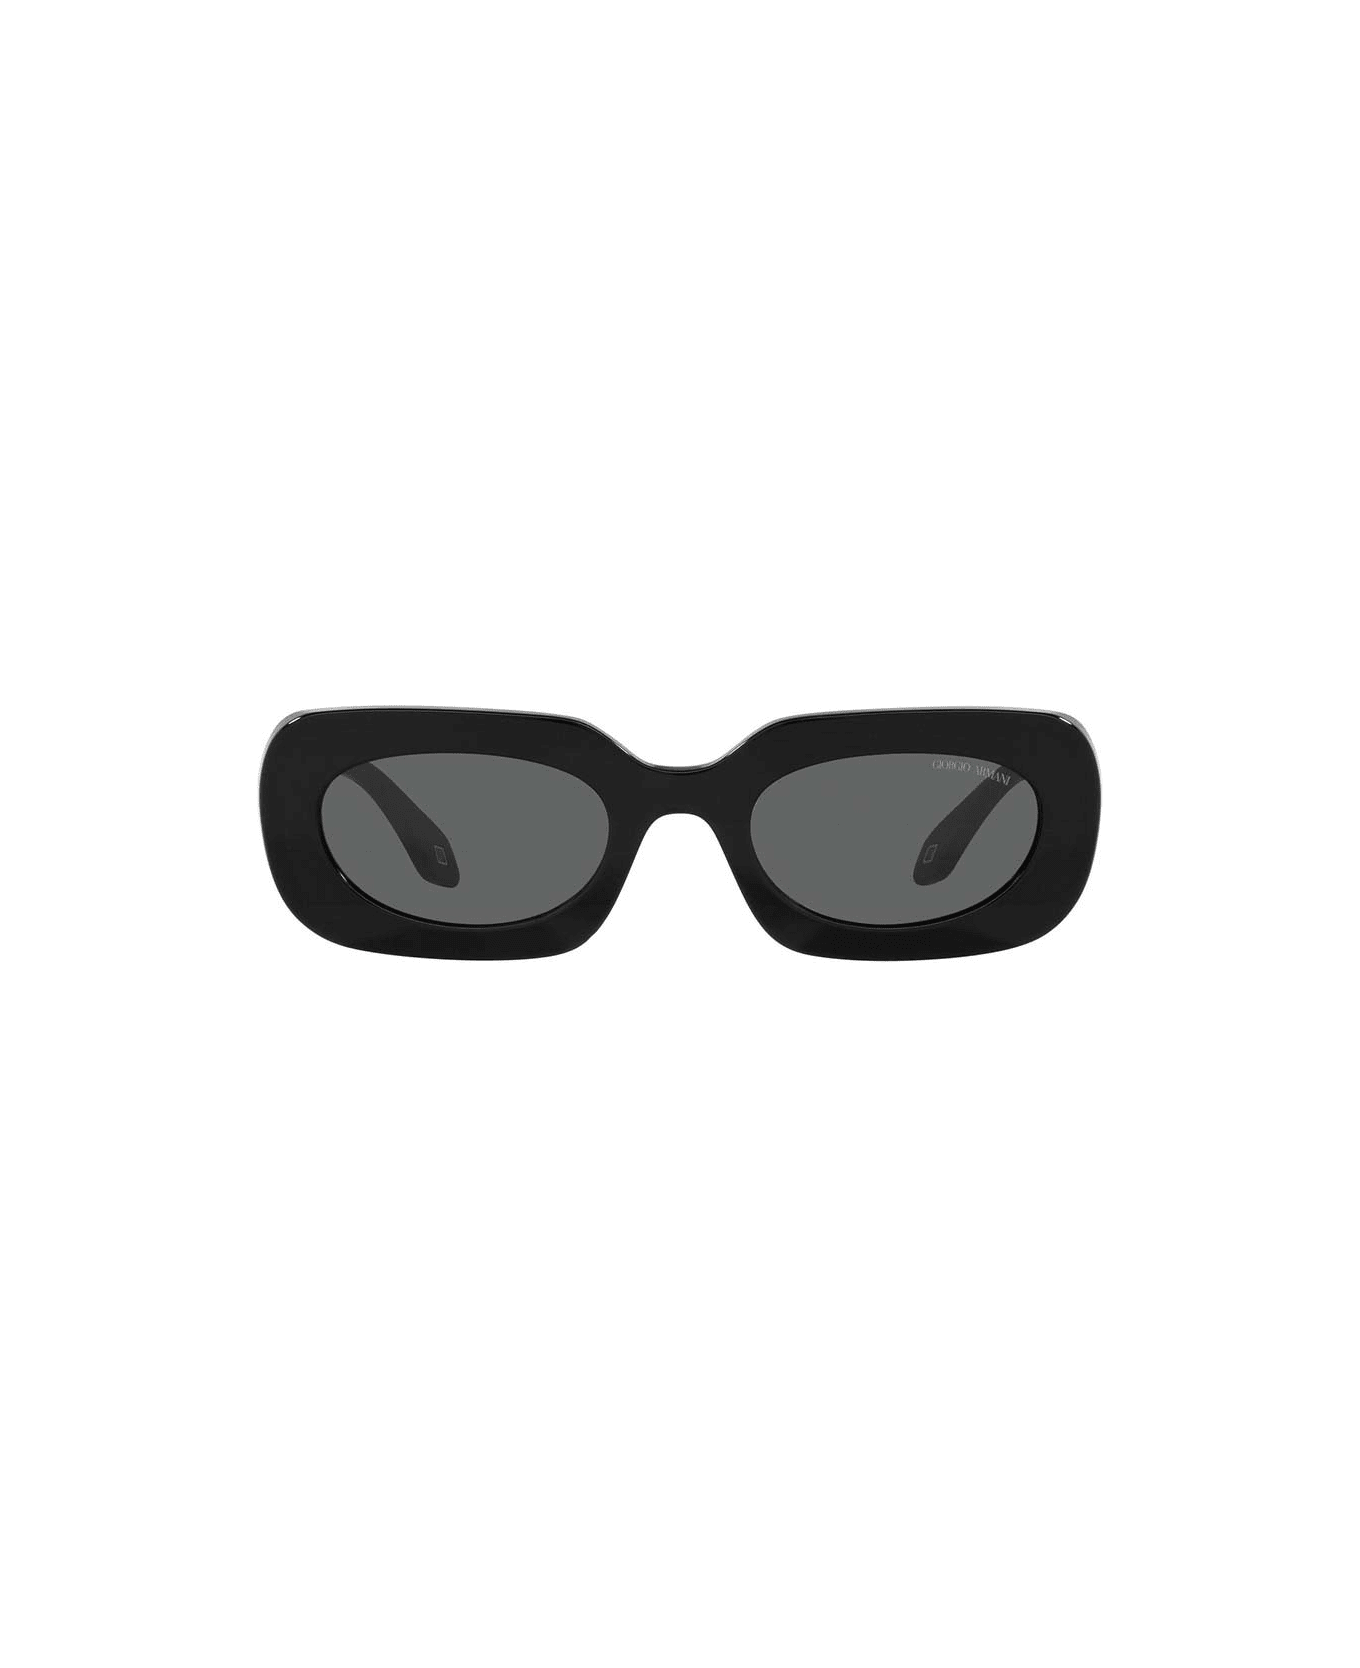 Giorgio Armani Eyewear - Nero/Nero アイウェア